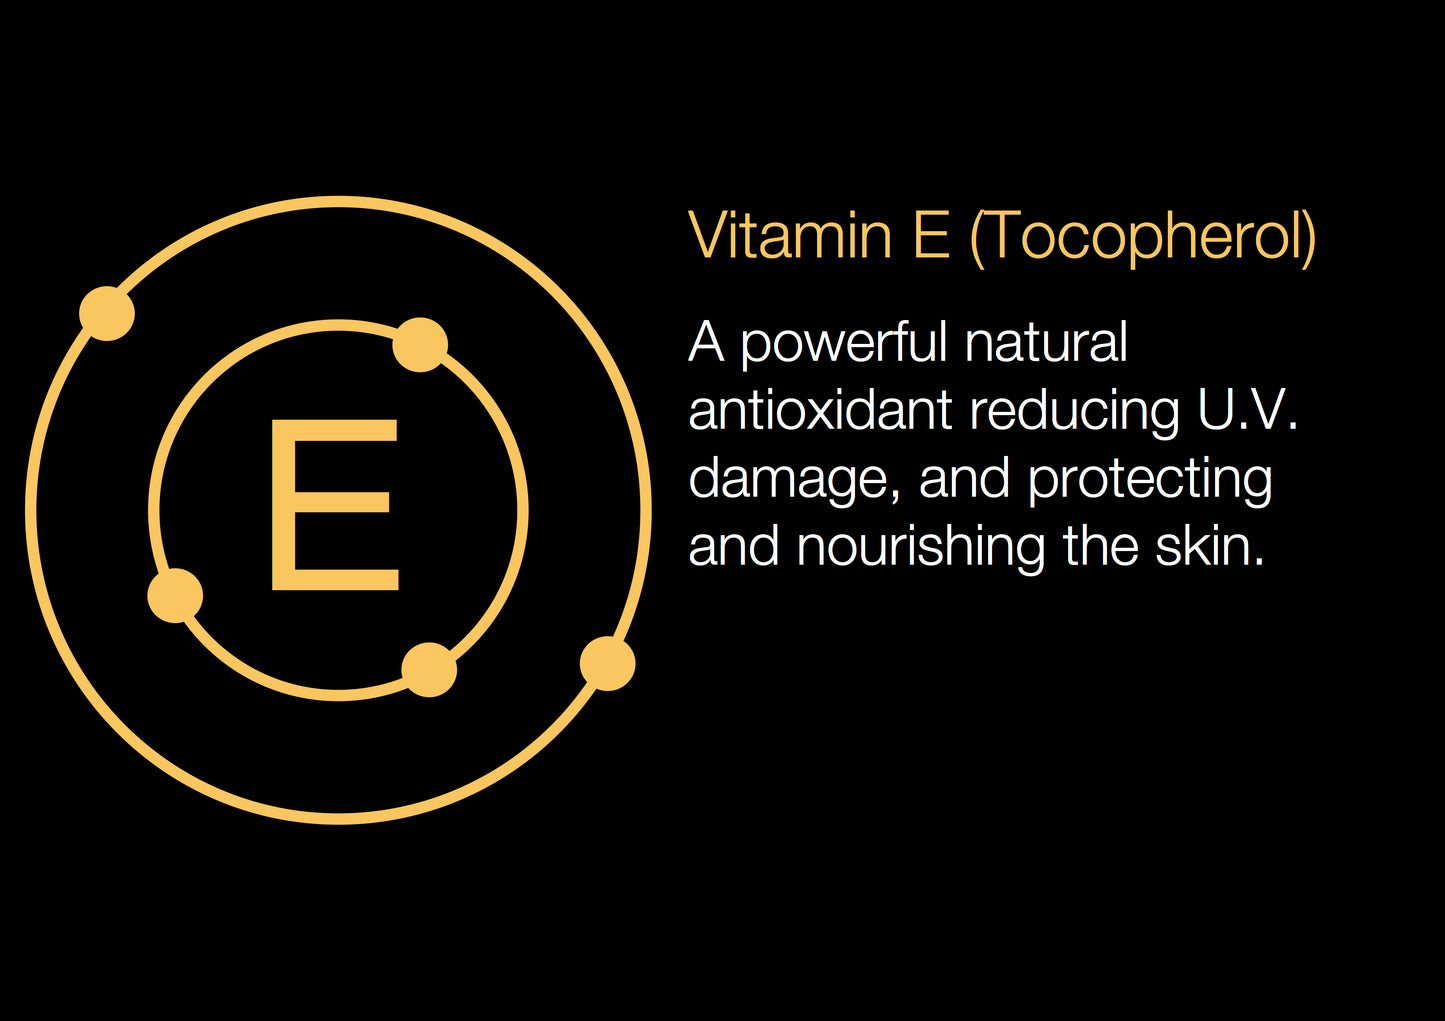 Collagener8 Vitamin C+E Ferulic Pro-Collagen Facial Serum 30ml